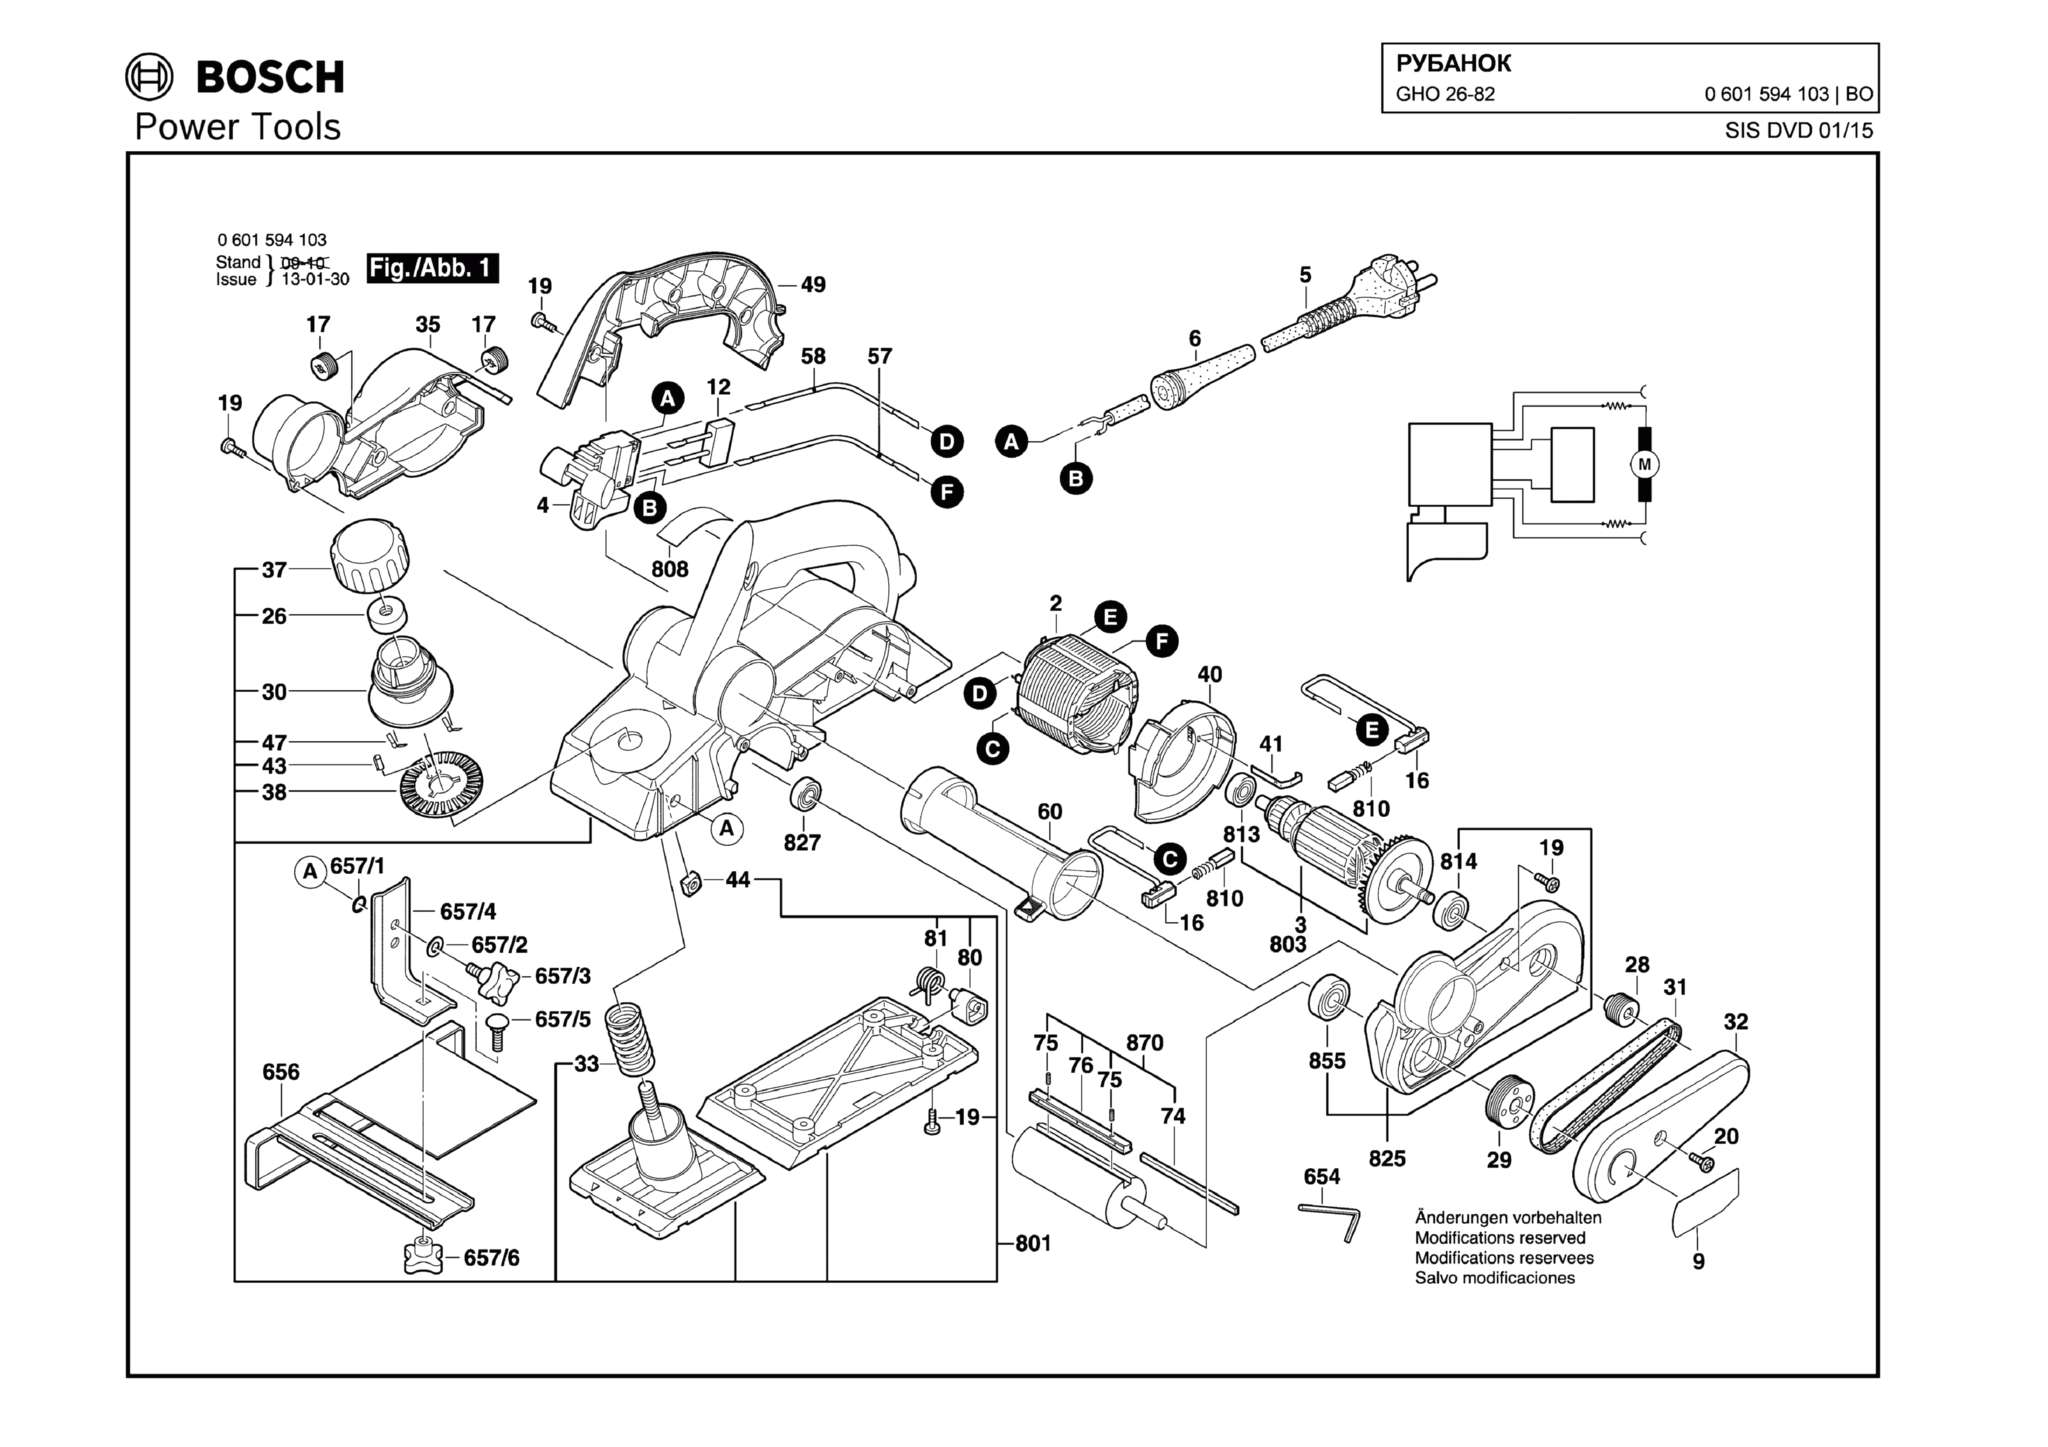 Запчасти, схема и деталировка Bosch GHO 26-82 (ТИП 0601594103)